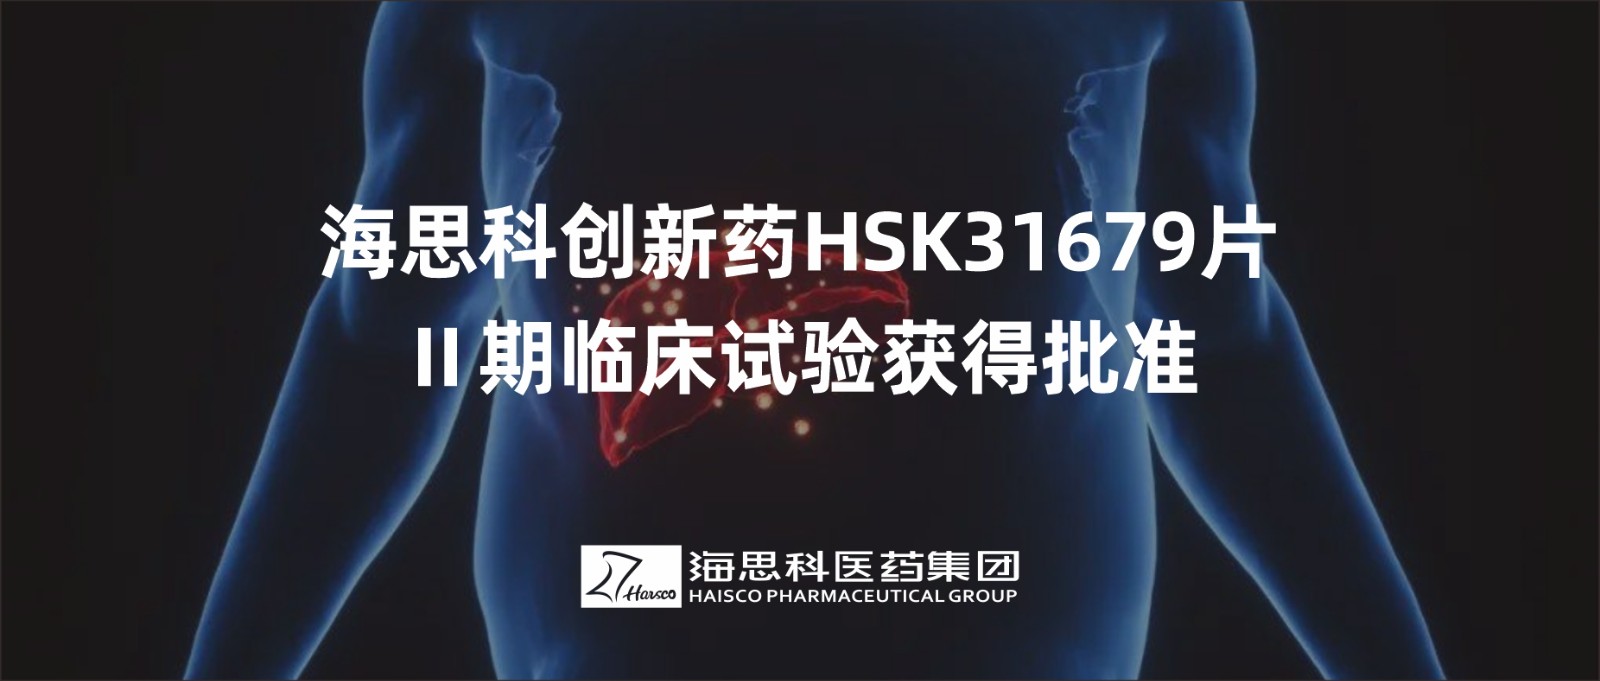 永利总站创新药HSK31679片Ⅱ期临床试验获得批准